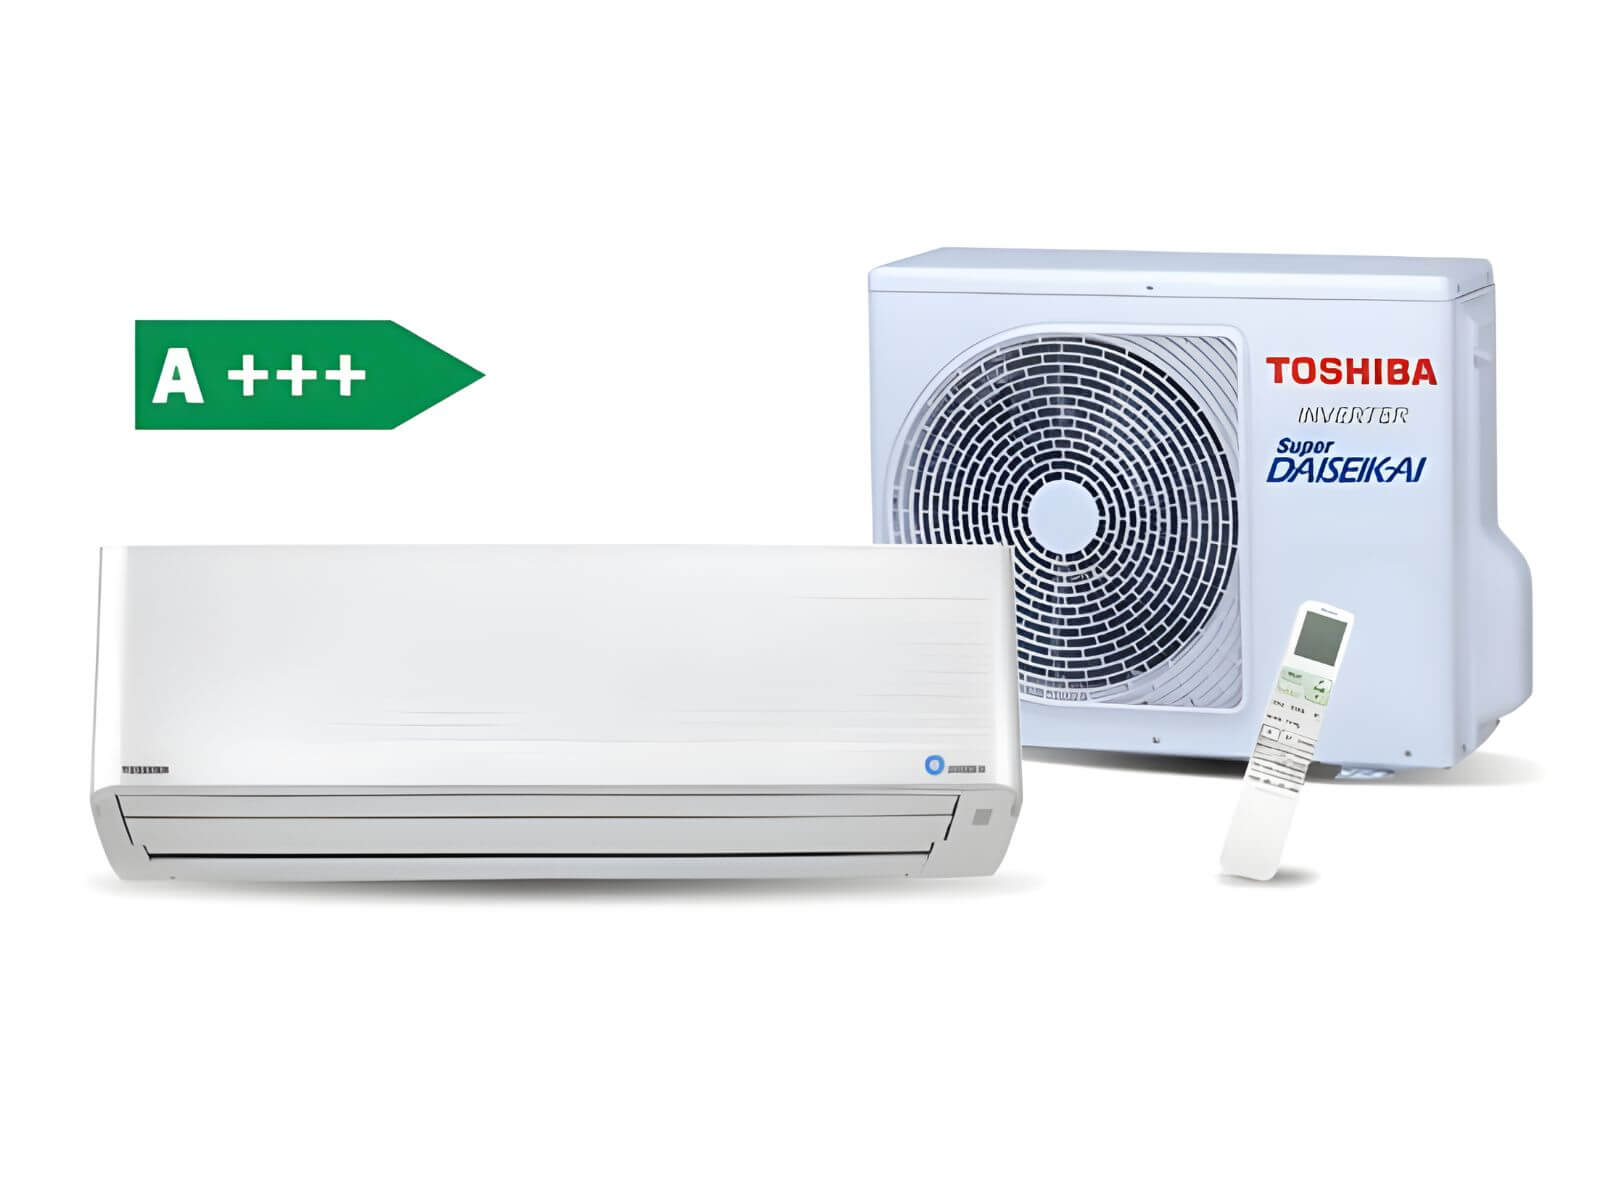 Toshiba Daiseikai 9 A+++ s vnitřní jednotkou, venkovní jednotkou klimatizace a ovladačem